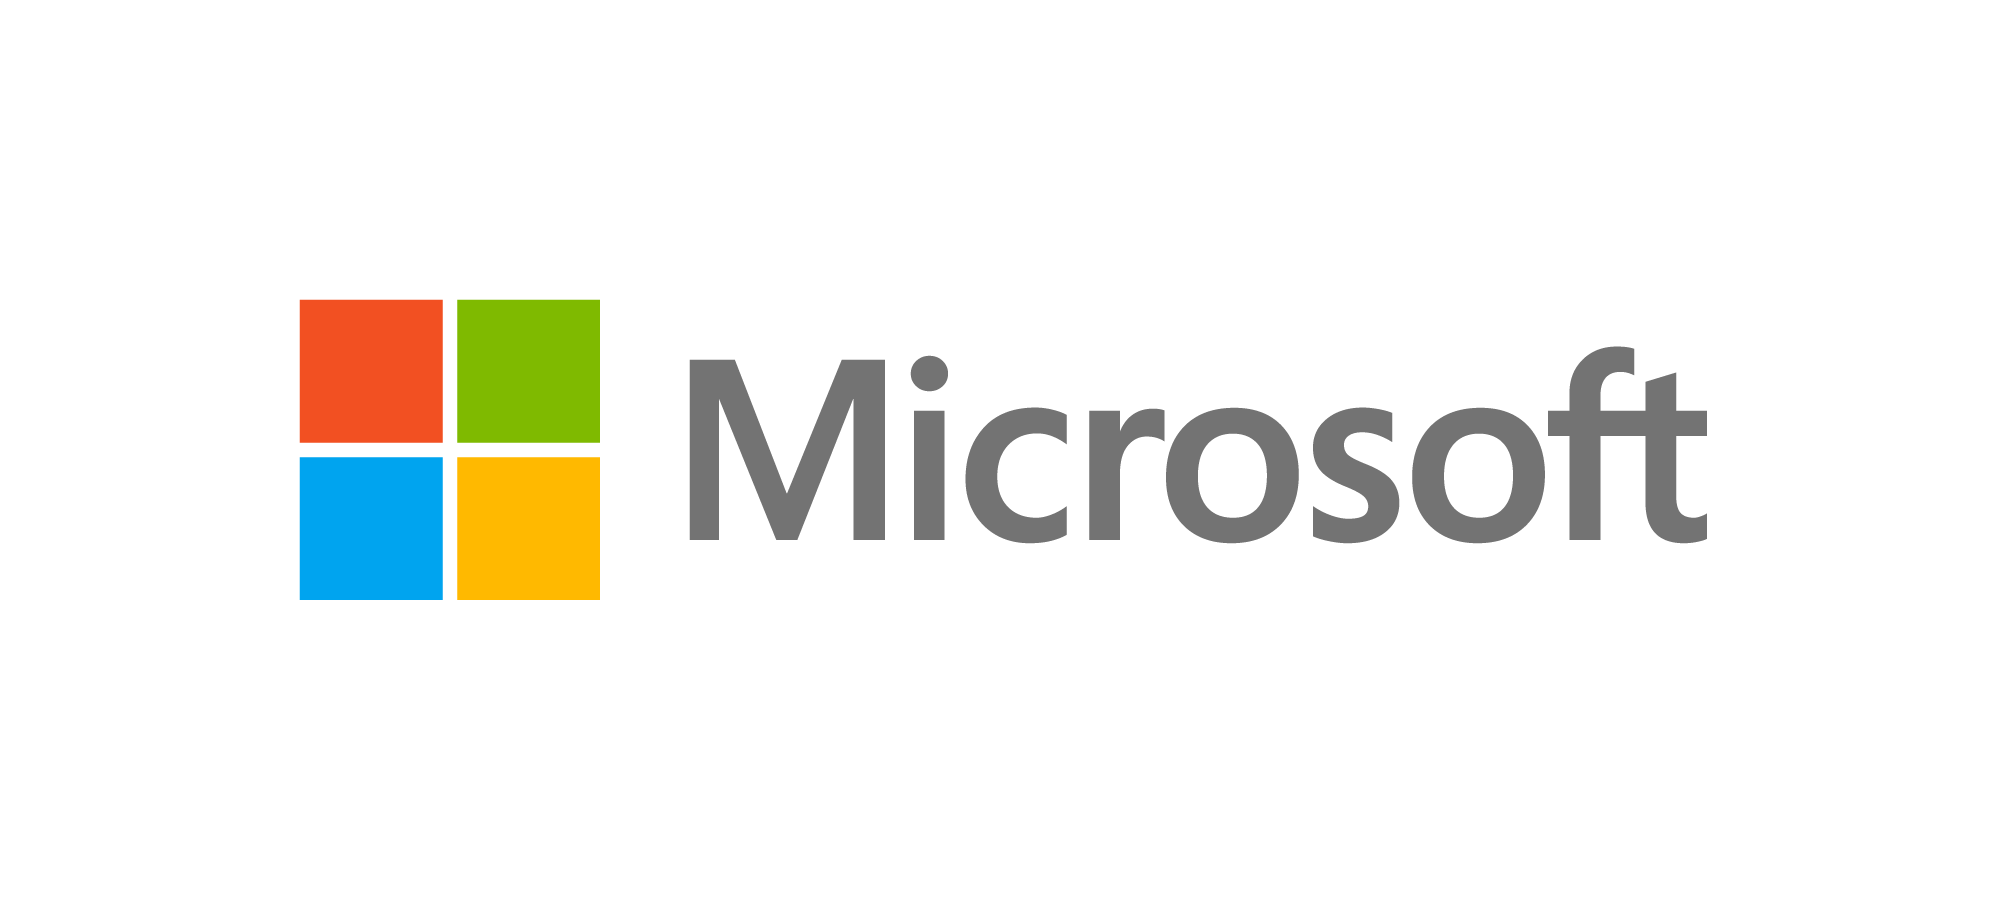 Microsoft - Partenaire de marsemd23